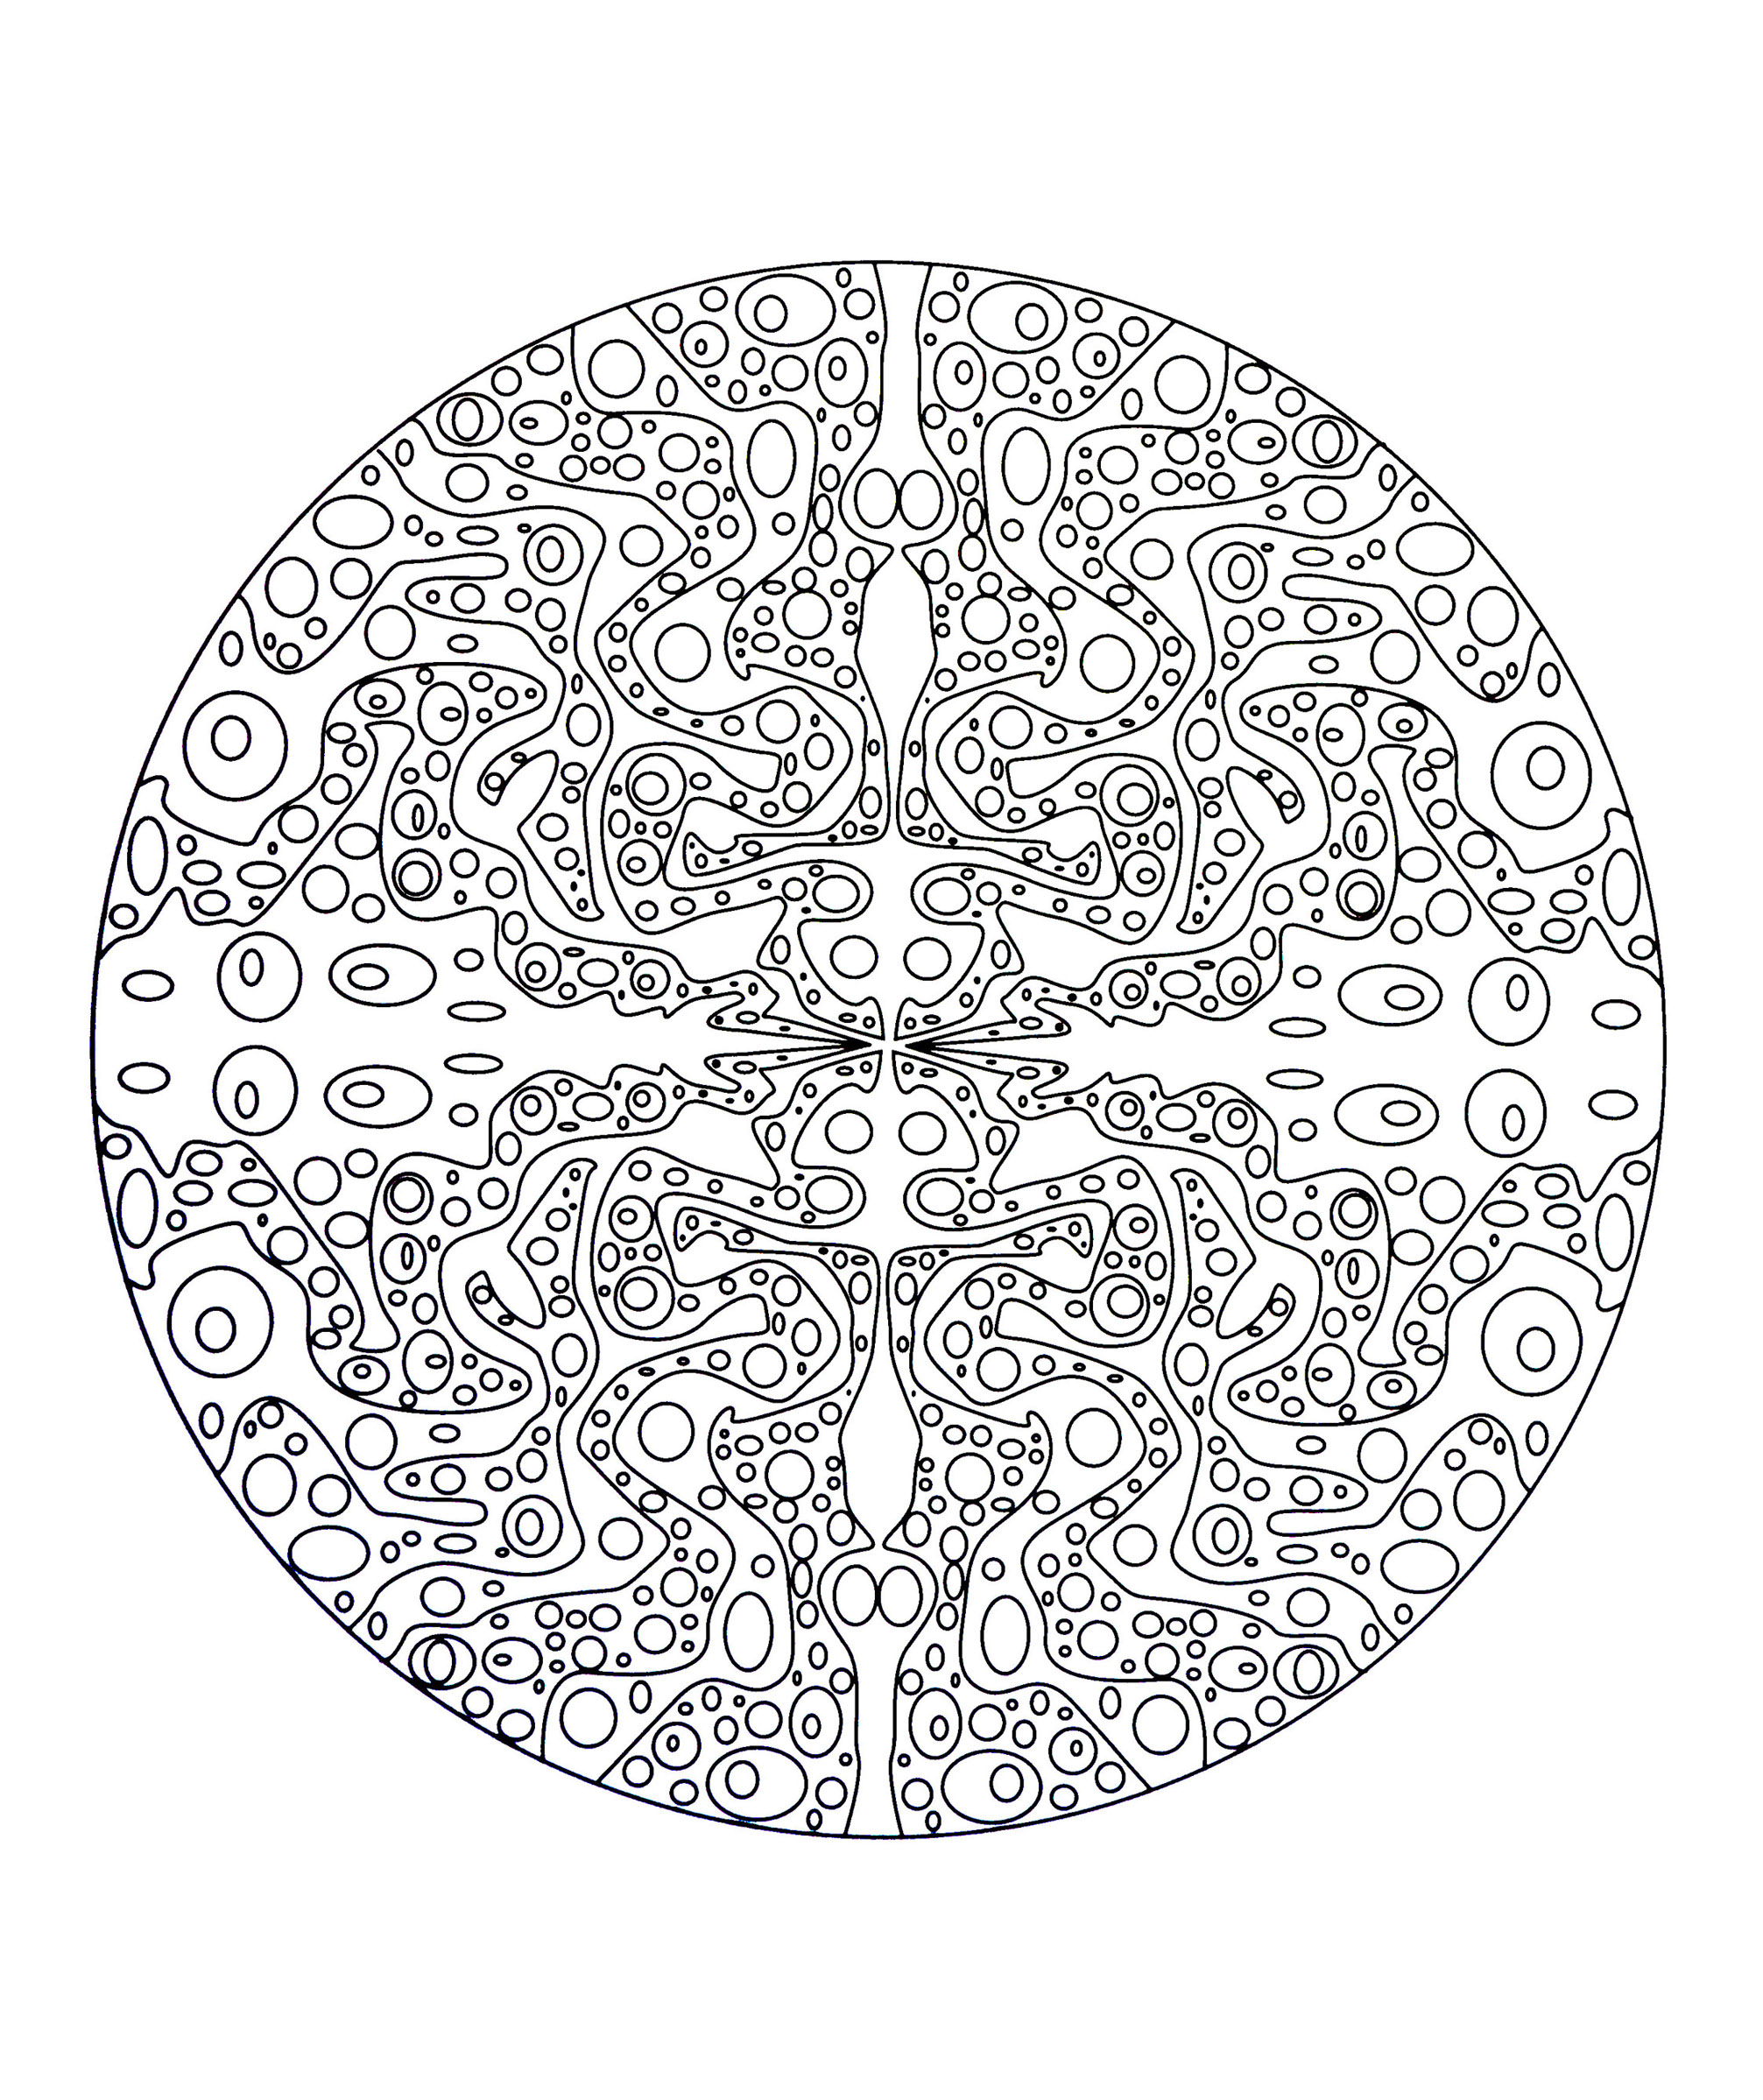 Mandala template full of bubles